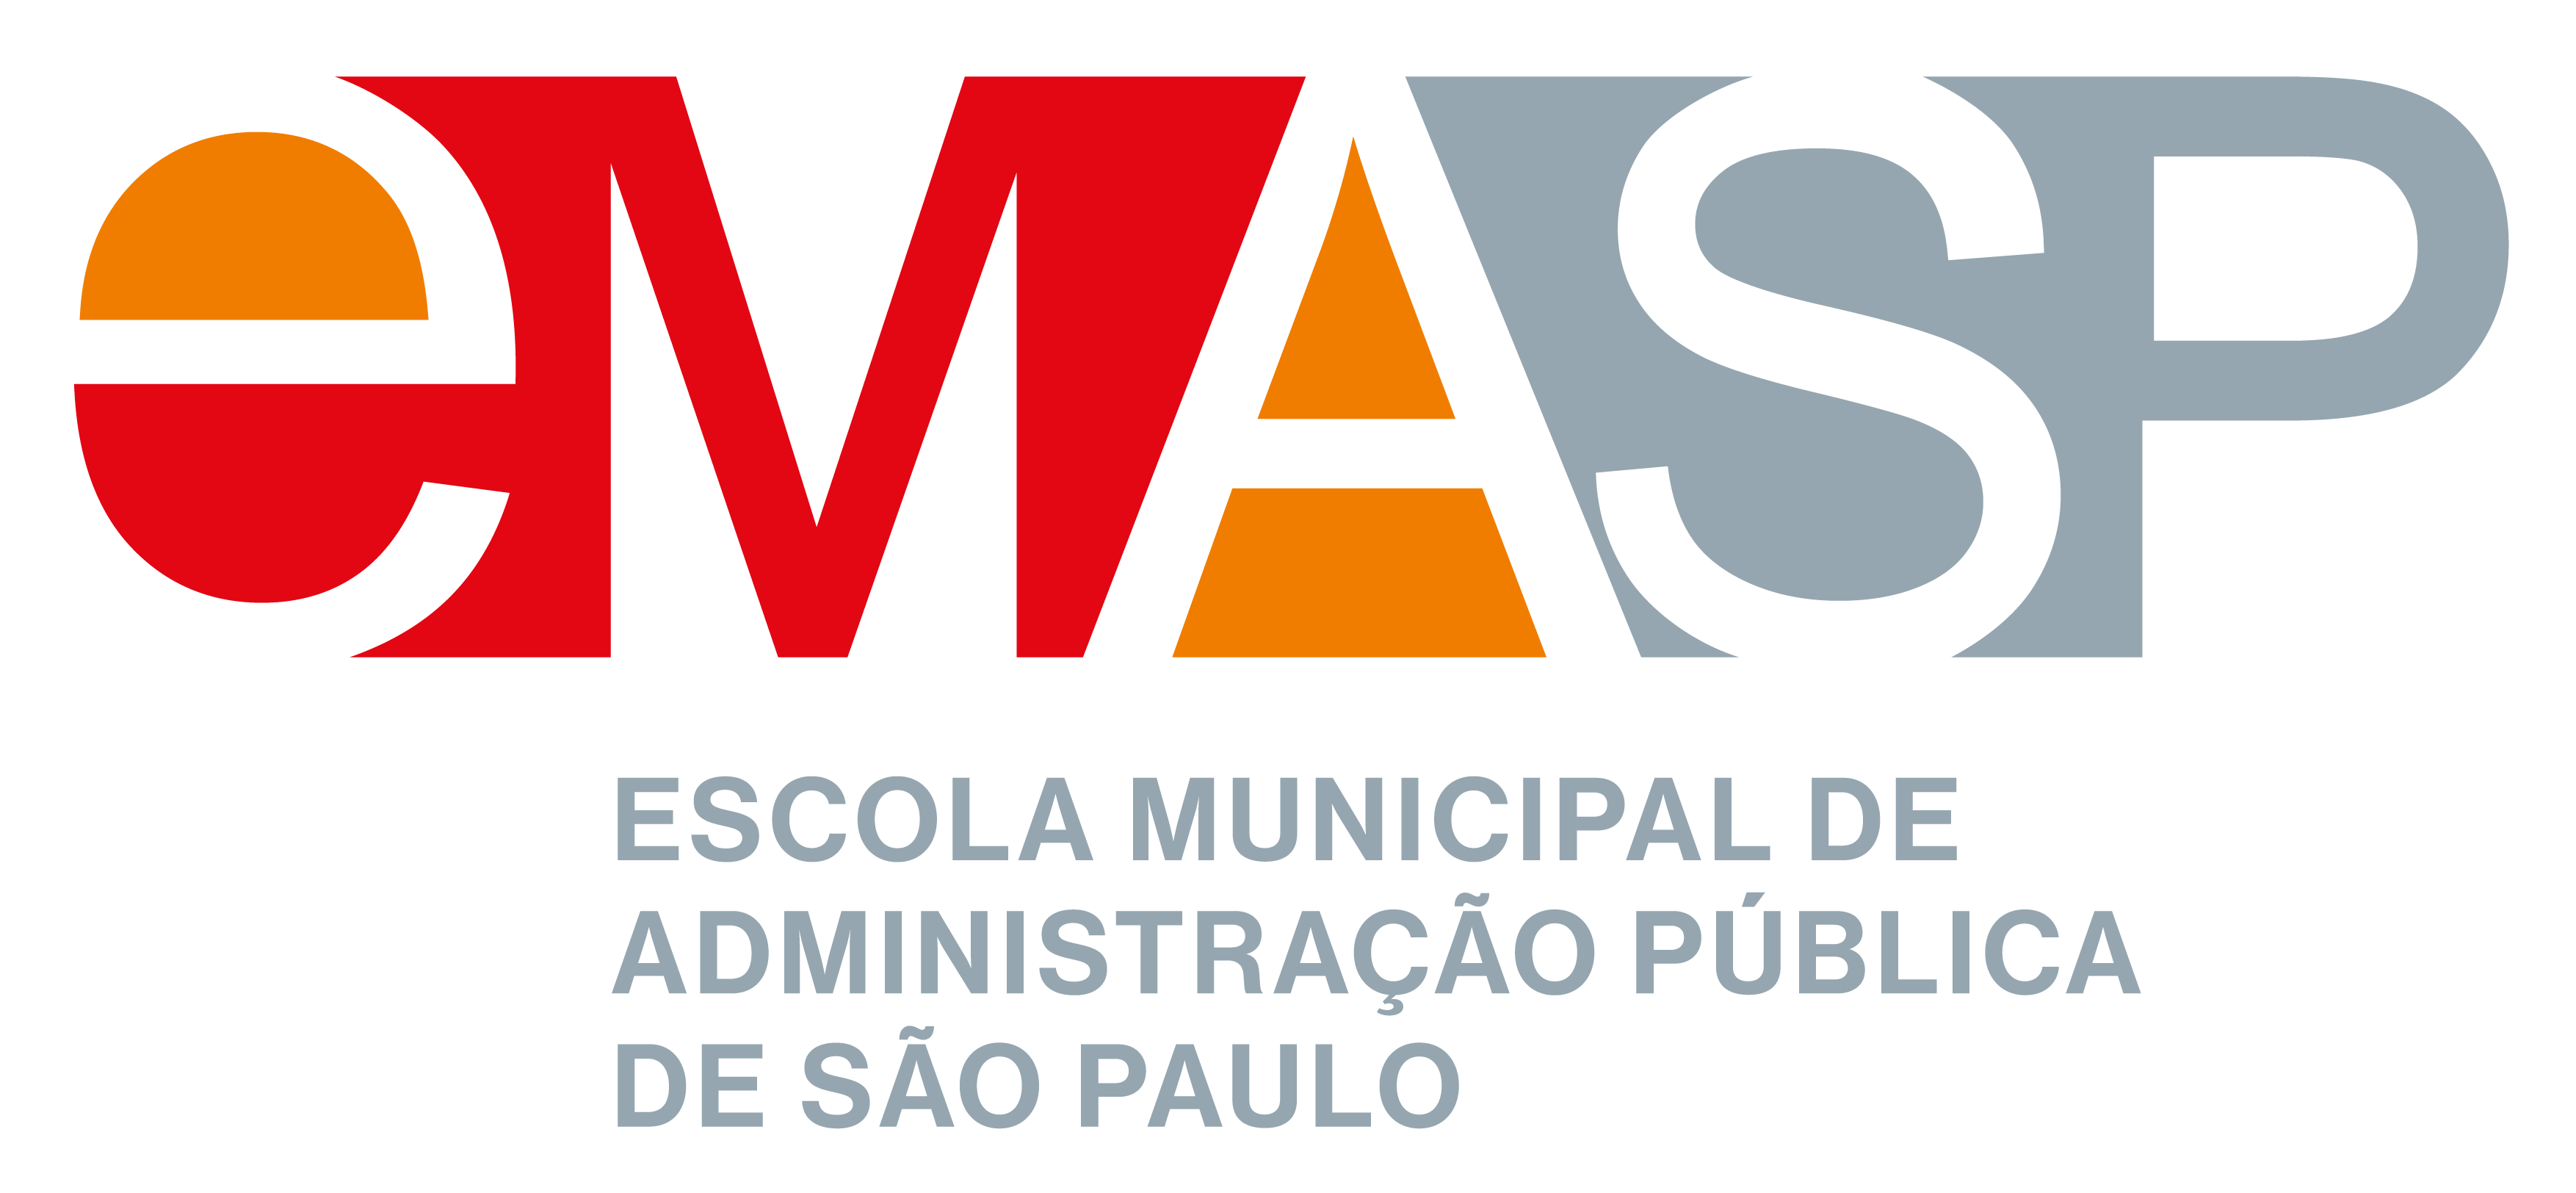 Escola Municipal de Administração Pública de São Paulo